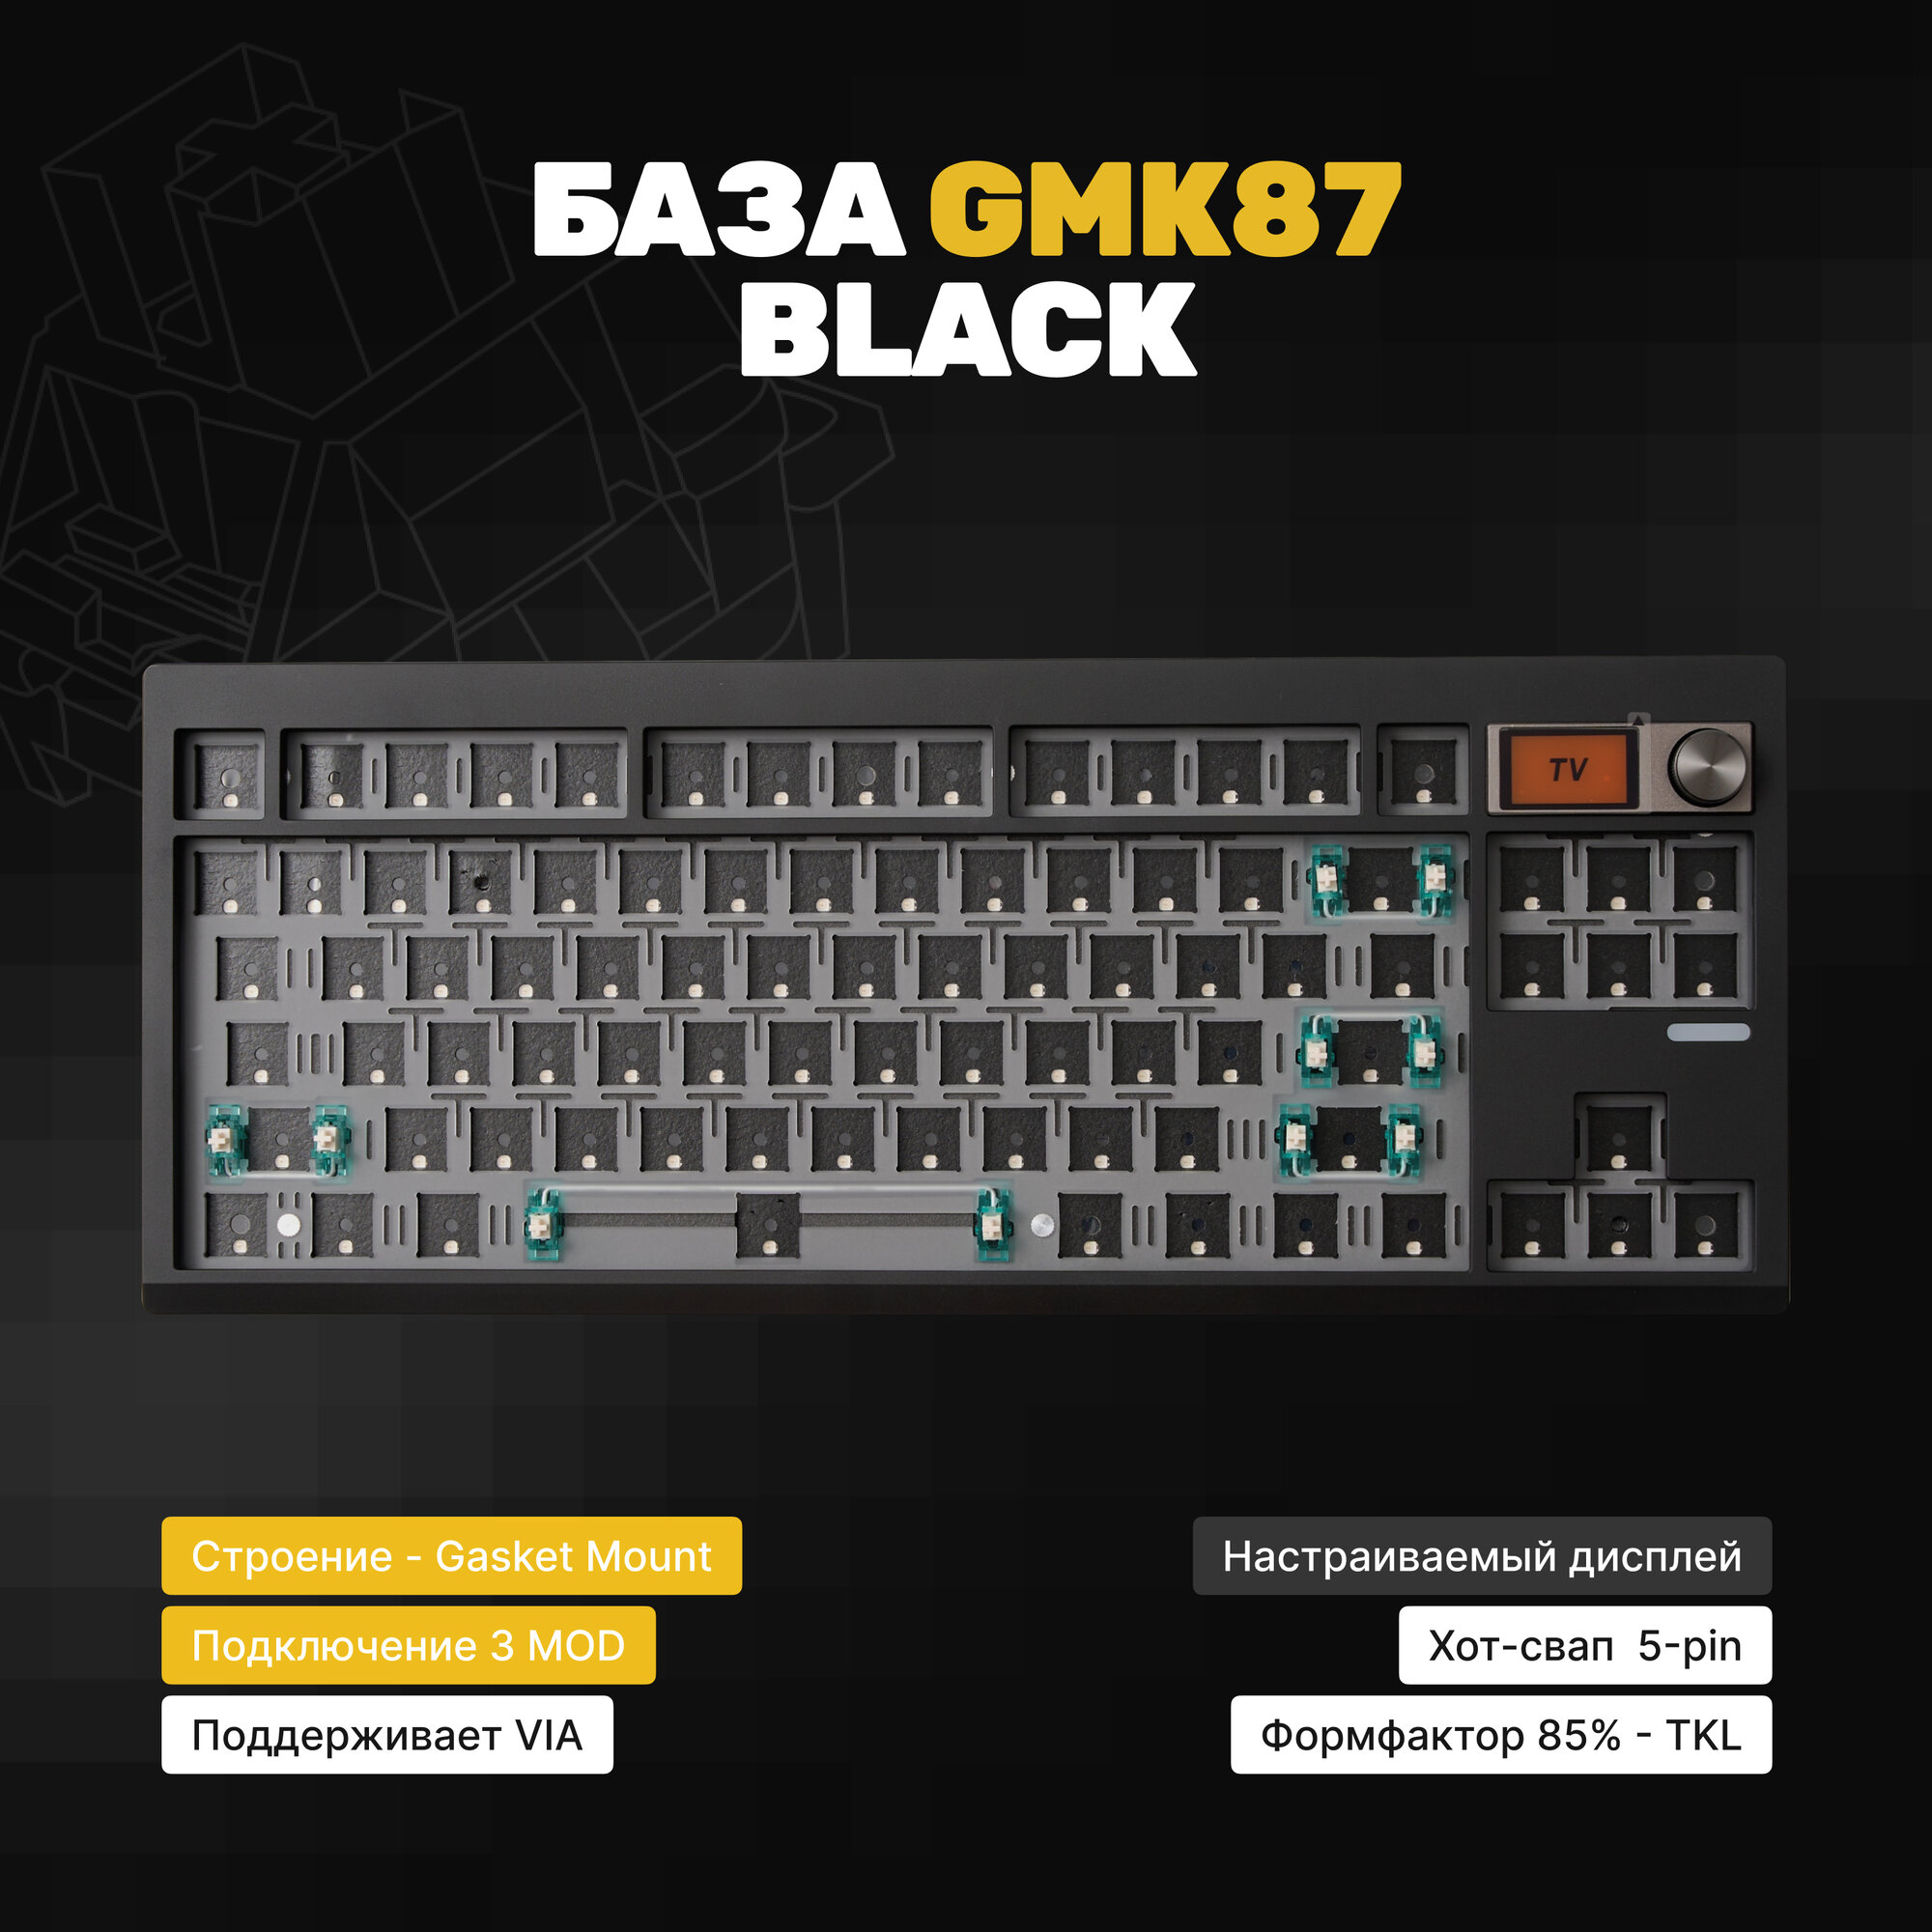 База для сборки механической клавиатура Zuoya GMK87 (Black), Gasket-mount, черная, утилита VIA, крутилка, экран, Hotswap, 3MOD